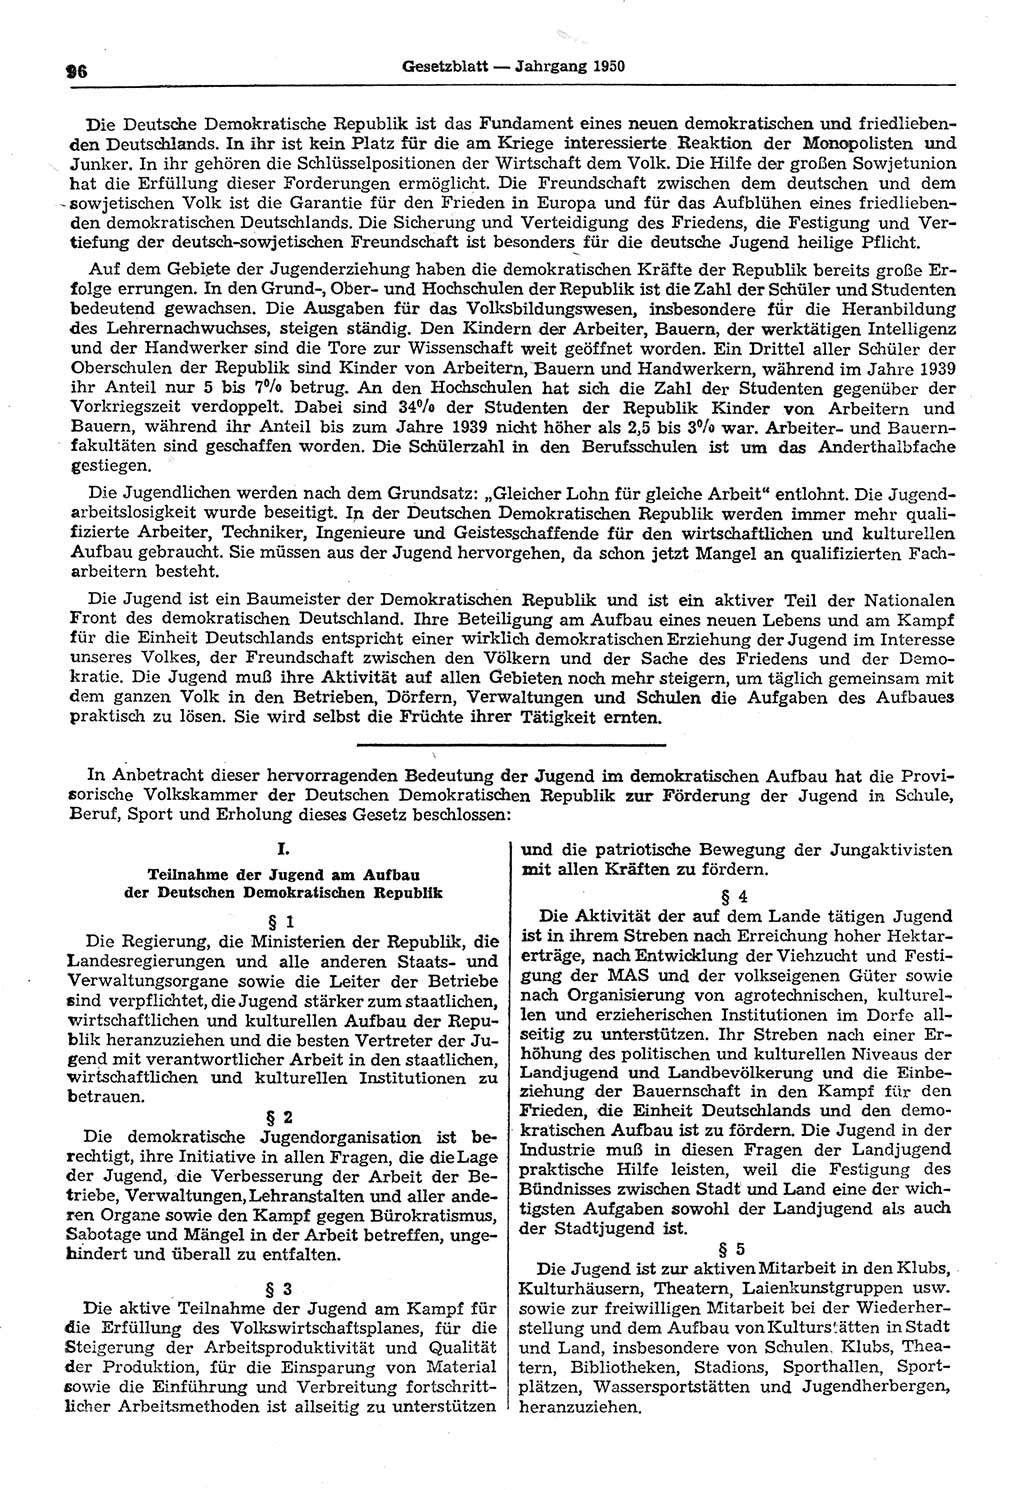 Gesetzblatt (GBl.) der Deutschen Demokratischen Republik (DDR) 1950, Seite 96 (GBl. DDR 1950, S. 96)